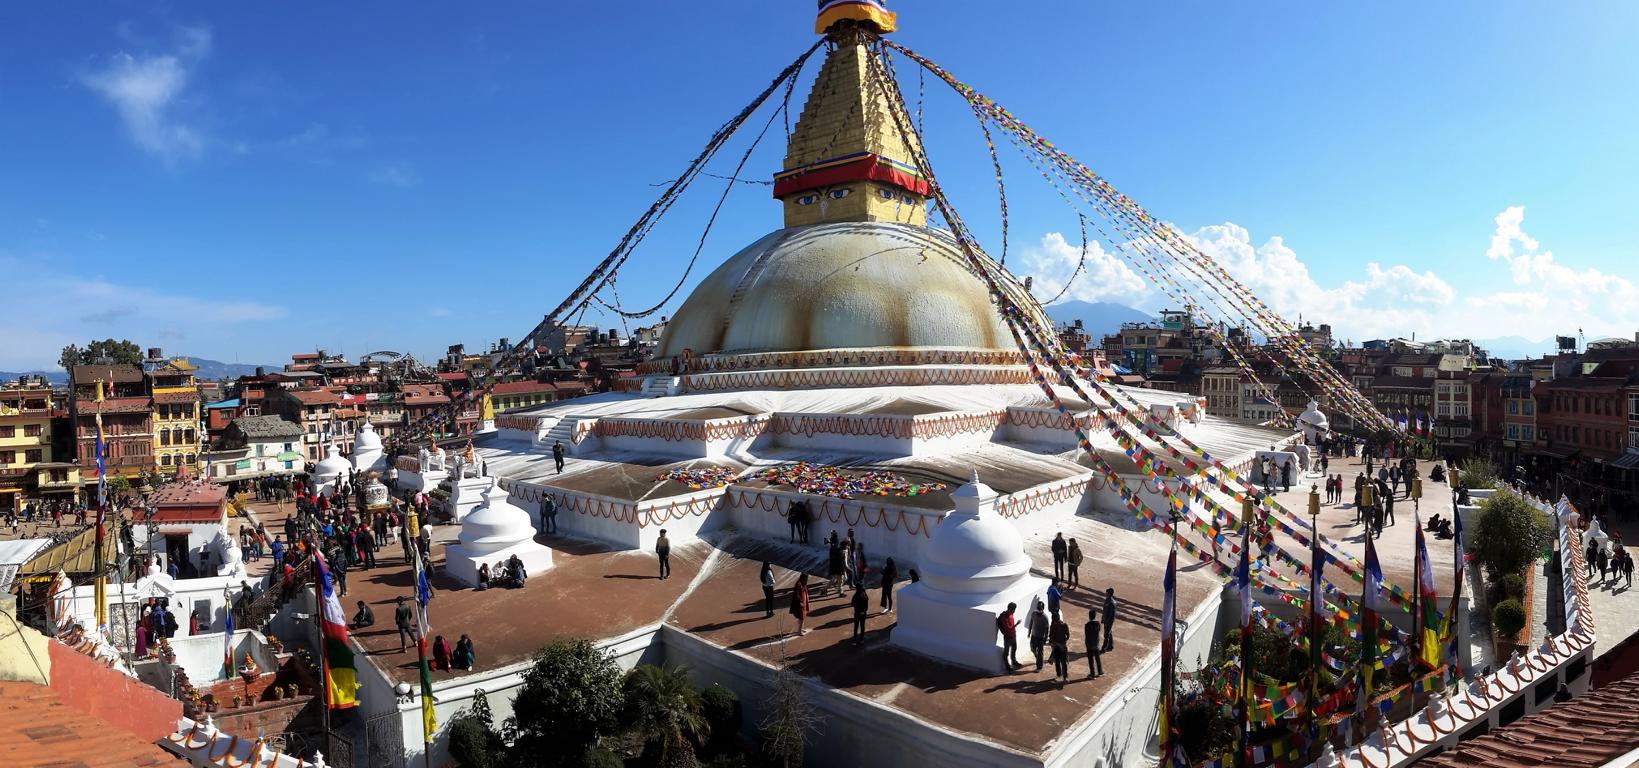 Der Stupa wird auch als Stupa der Erleuchtung oder Bodhi Stupa bezeichnet. Er ist eines der größten und bedeutendsten buddhistischen Denkmale in der Welt. 1979 wurde er zum Weltkulturerbe ernannt. Der Stupa ist das Ziel für Pilger aus dem Himalaya, Tibet und Süd/Ost- bzw. Ostasien. 1959 entstand hier nach der Flucht des Dalai Lama aus Tibet ein neues Glaubenszentrum für den tibetischen Buddhismus. Der Stupa von Bodnath liegt an einer alten Handelsstraße und wurde wohl von den Händlern vor Beginn der langen Reise zum Gebet genutzt.